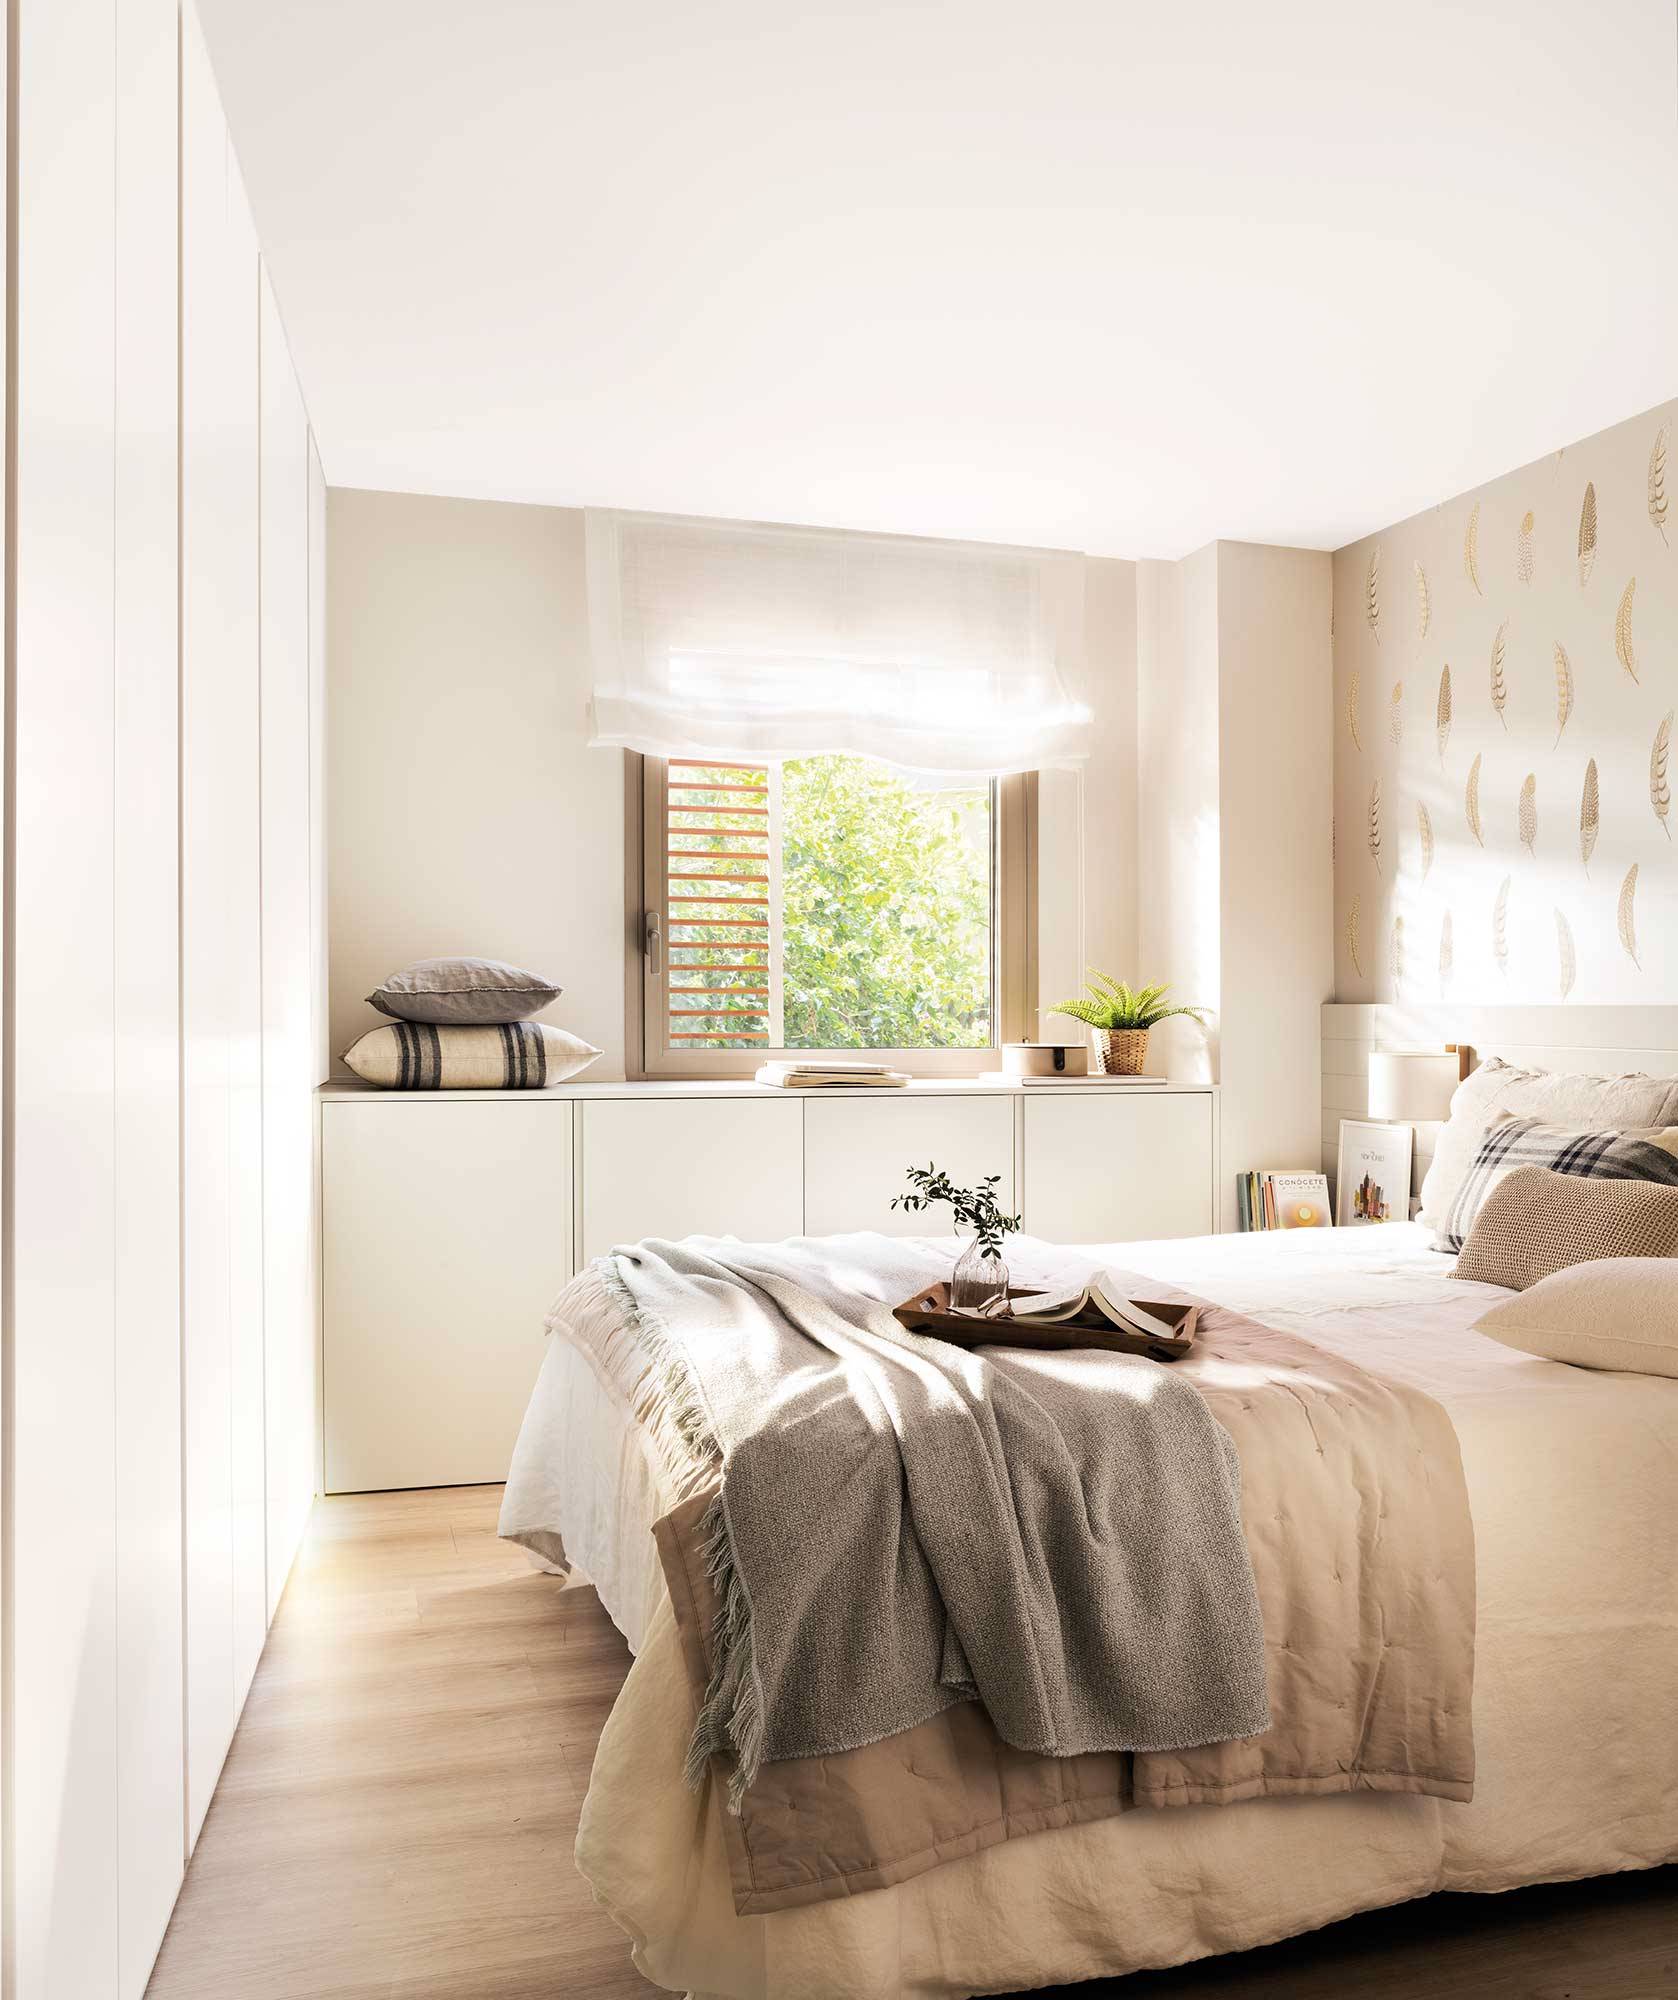 Dormitorio blanco con armarios a pie de cama y bajo la ventana_00522548.